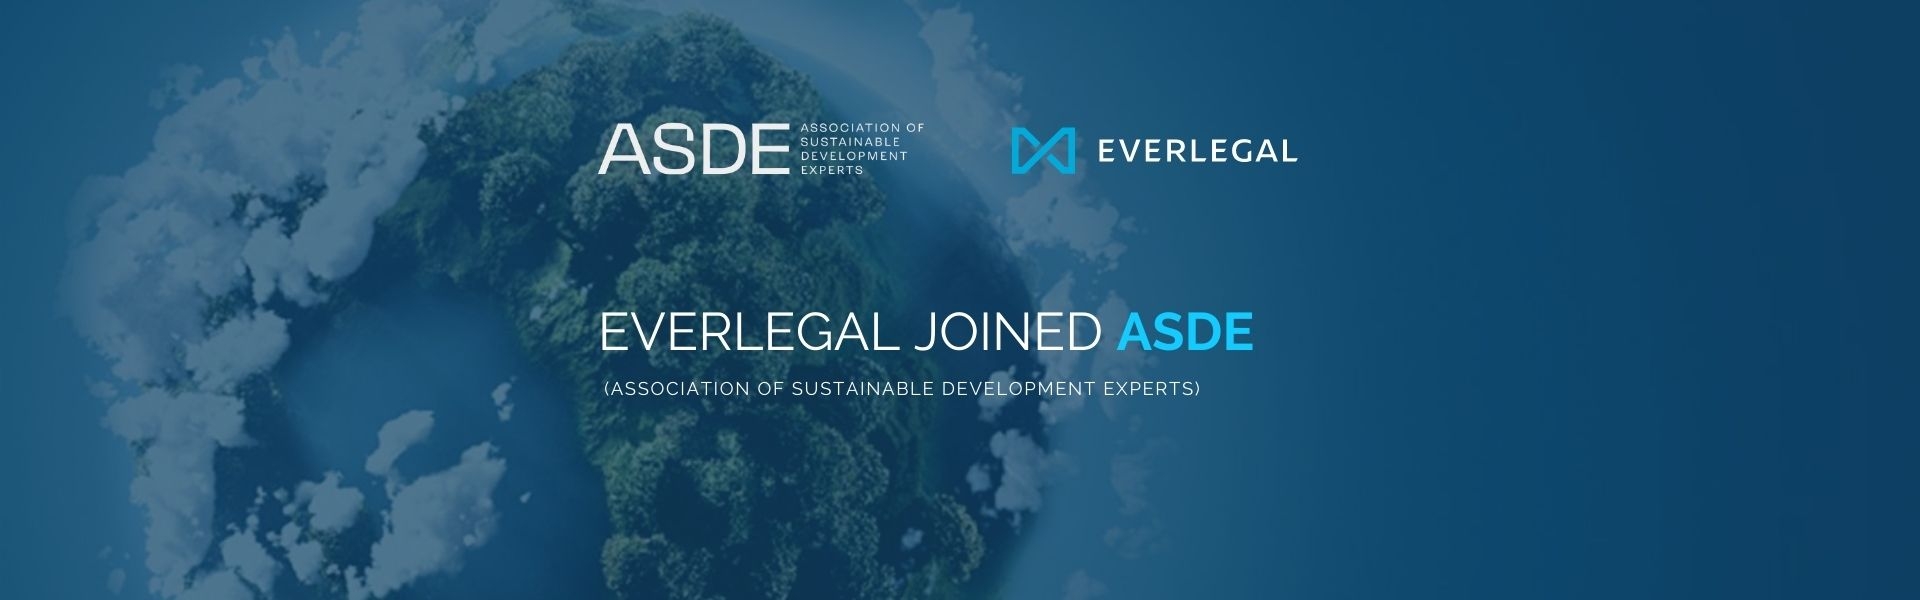 EVERLEGAL joined ASDE